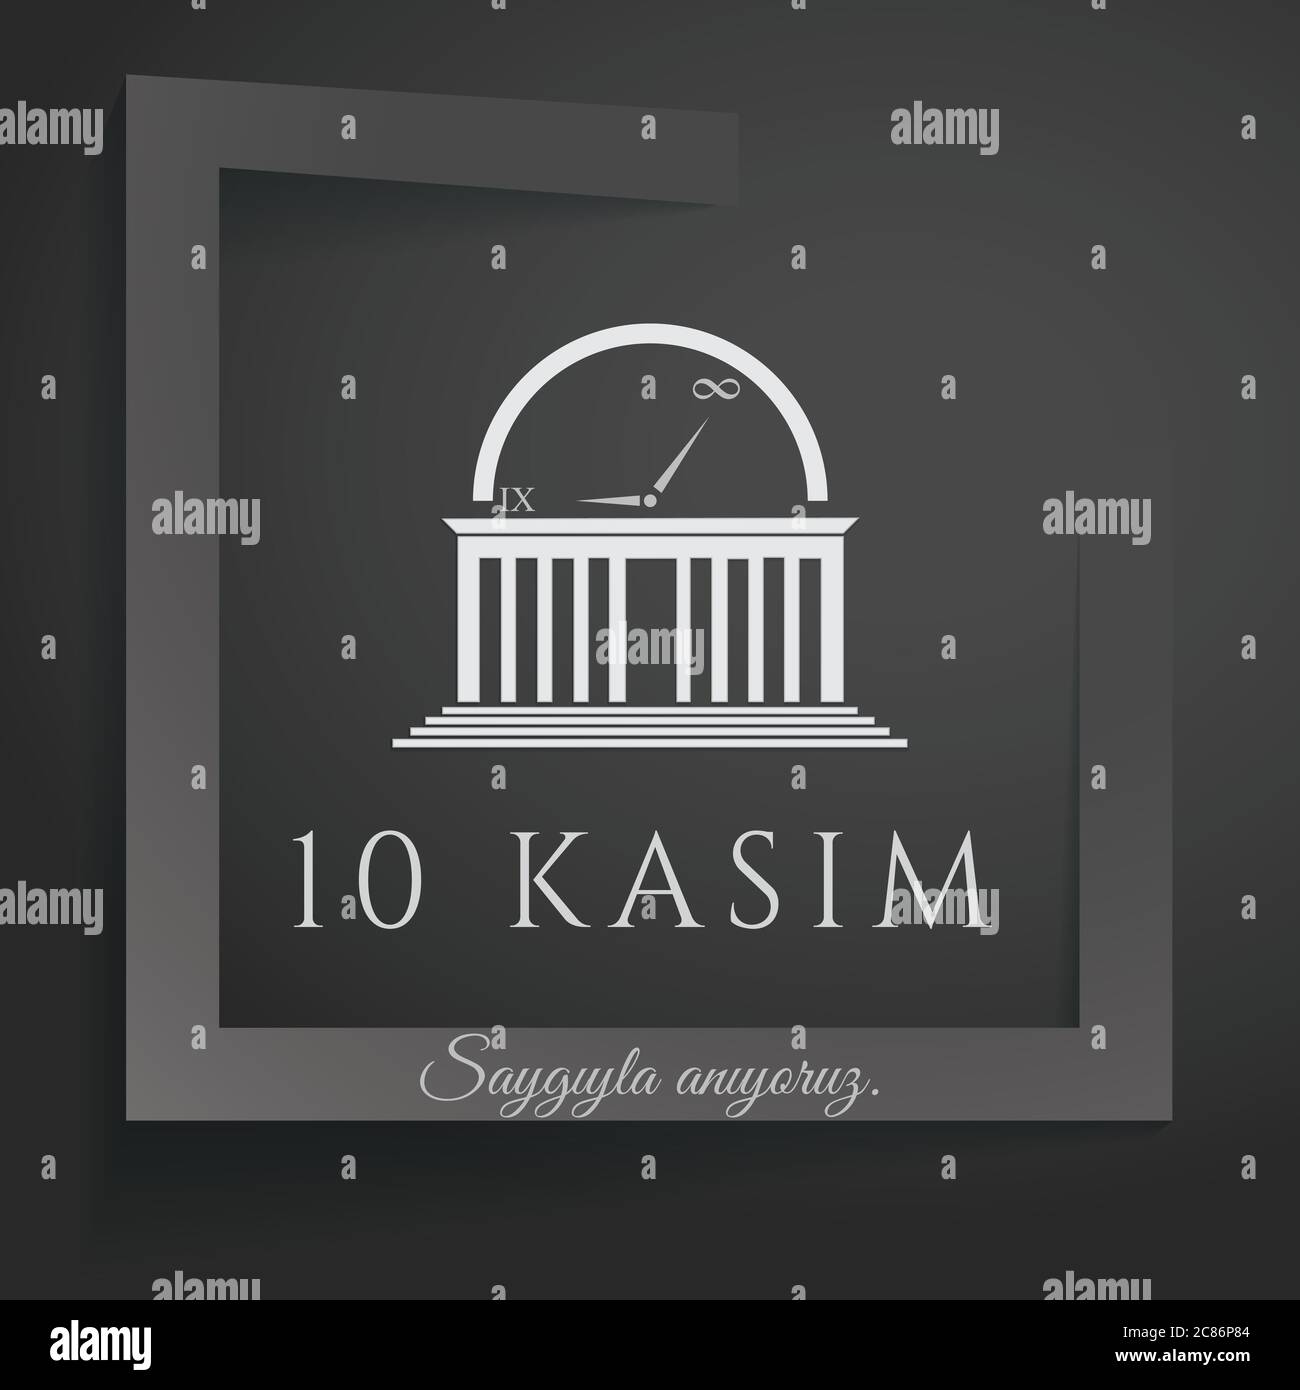 10 kasim - 10 novembre, anniversario della morte di Mustafa Kemal Ataturk. Illustrazione Vettoriale